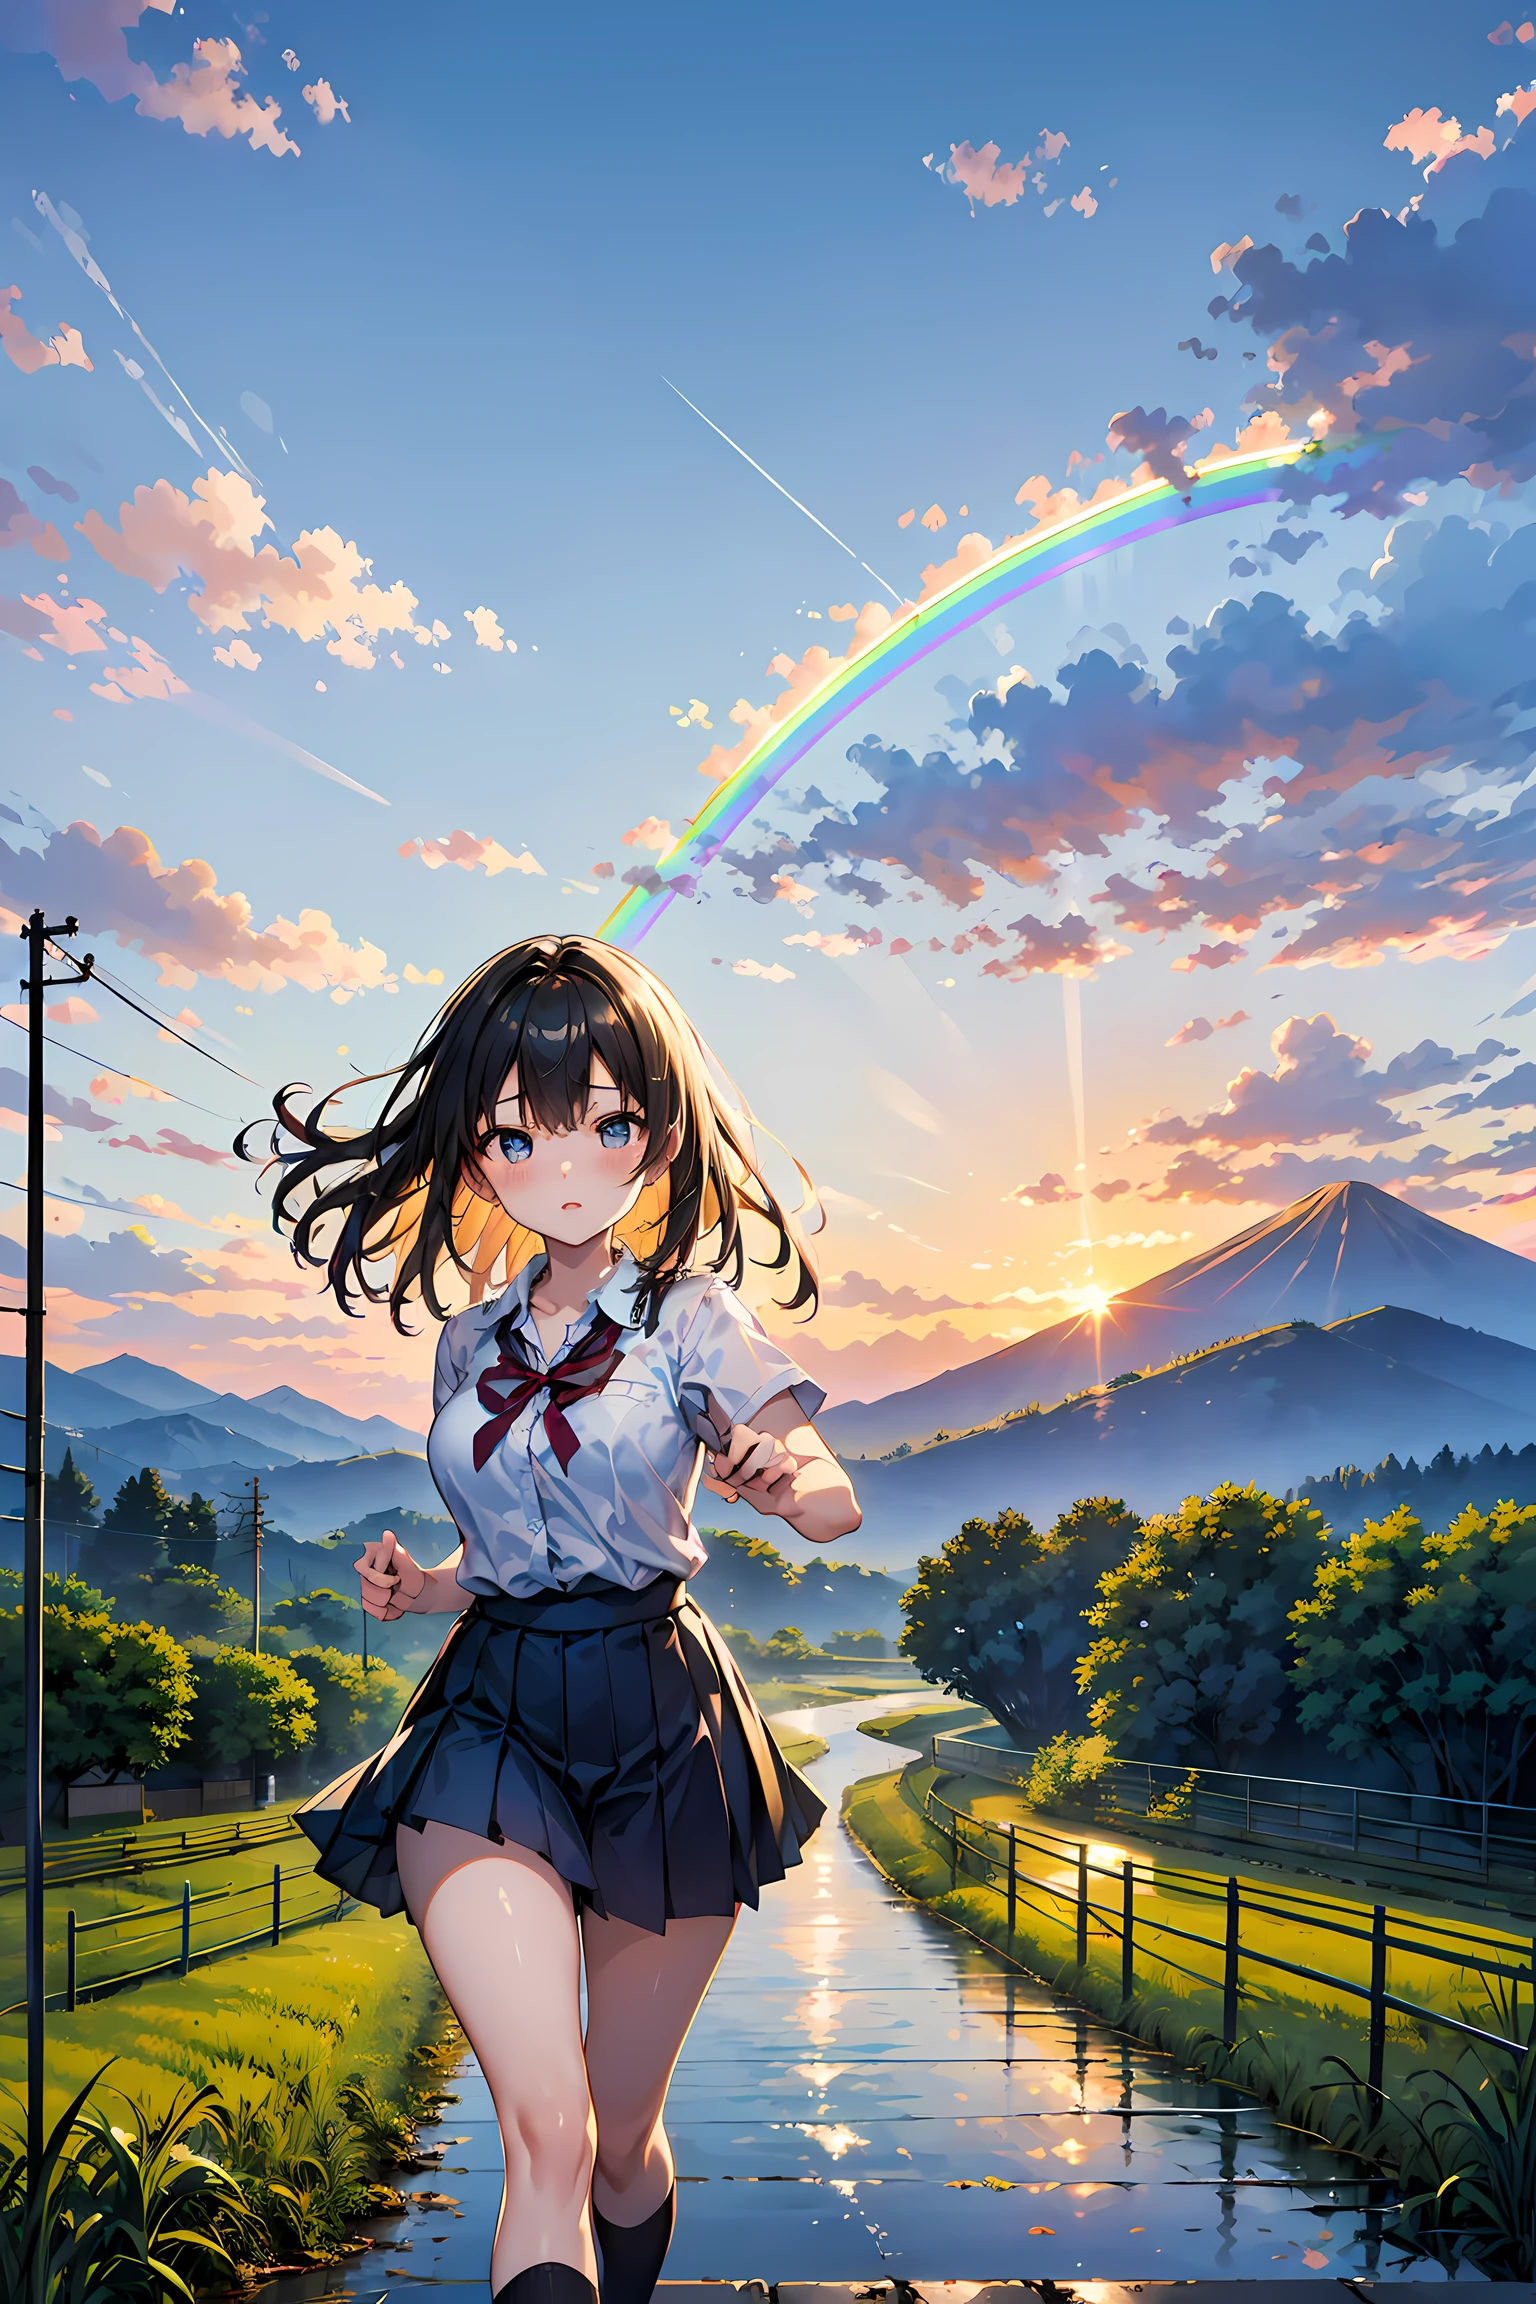 彩虹、美丽的彩虹、(彩虹天空:1.5), 高中女孩奔向挂在山上的彩虹、一个大的, 山上美丽的彩虹、日本女高中生、穿着 、雨后的道路、稻田、彩虹、乡村景色、日本的乡村风景、日落、红蜻蜓、溅起玩红色苍蝇背景,